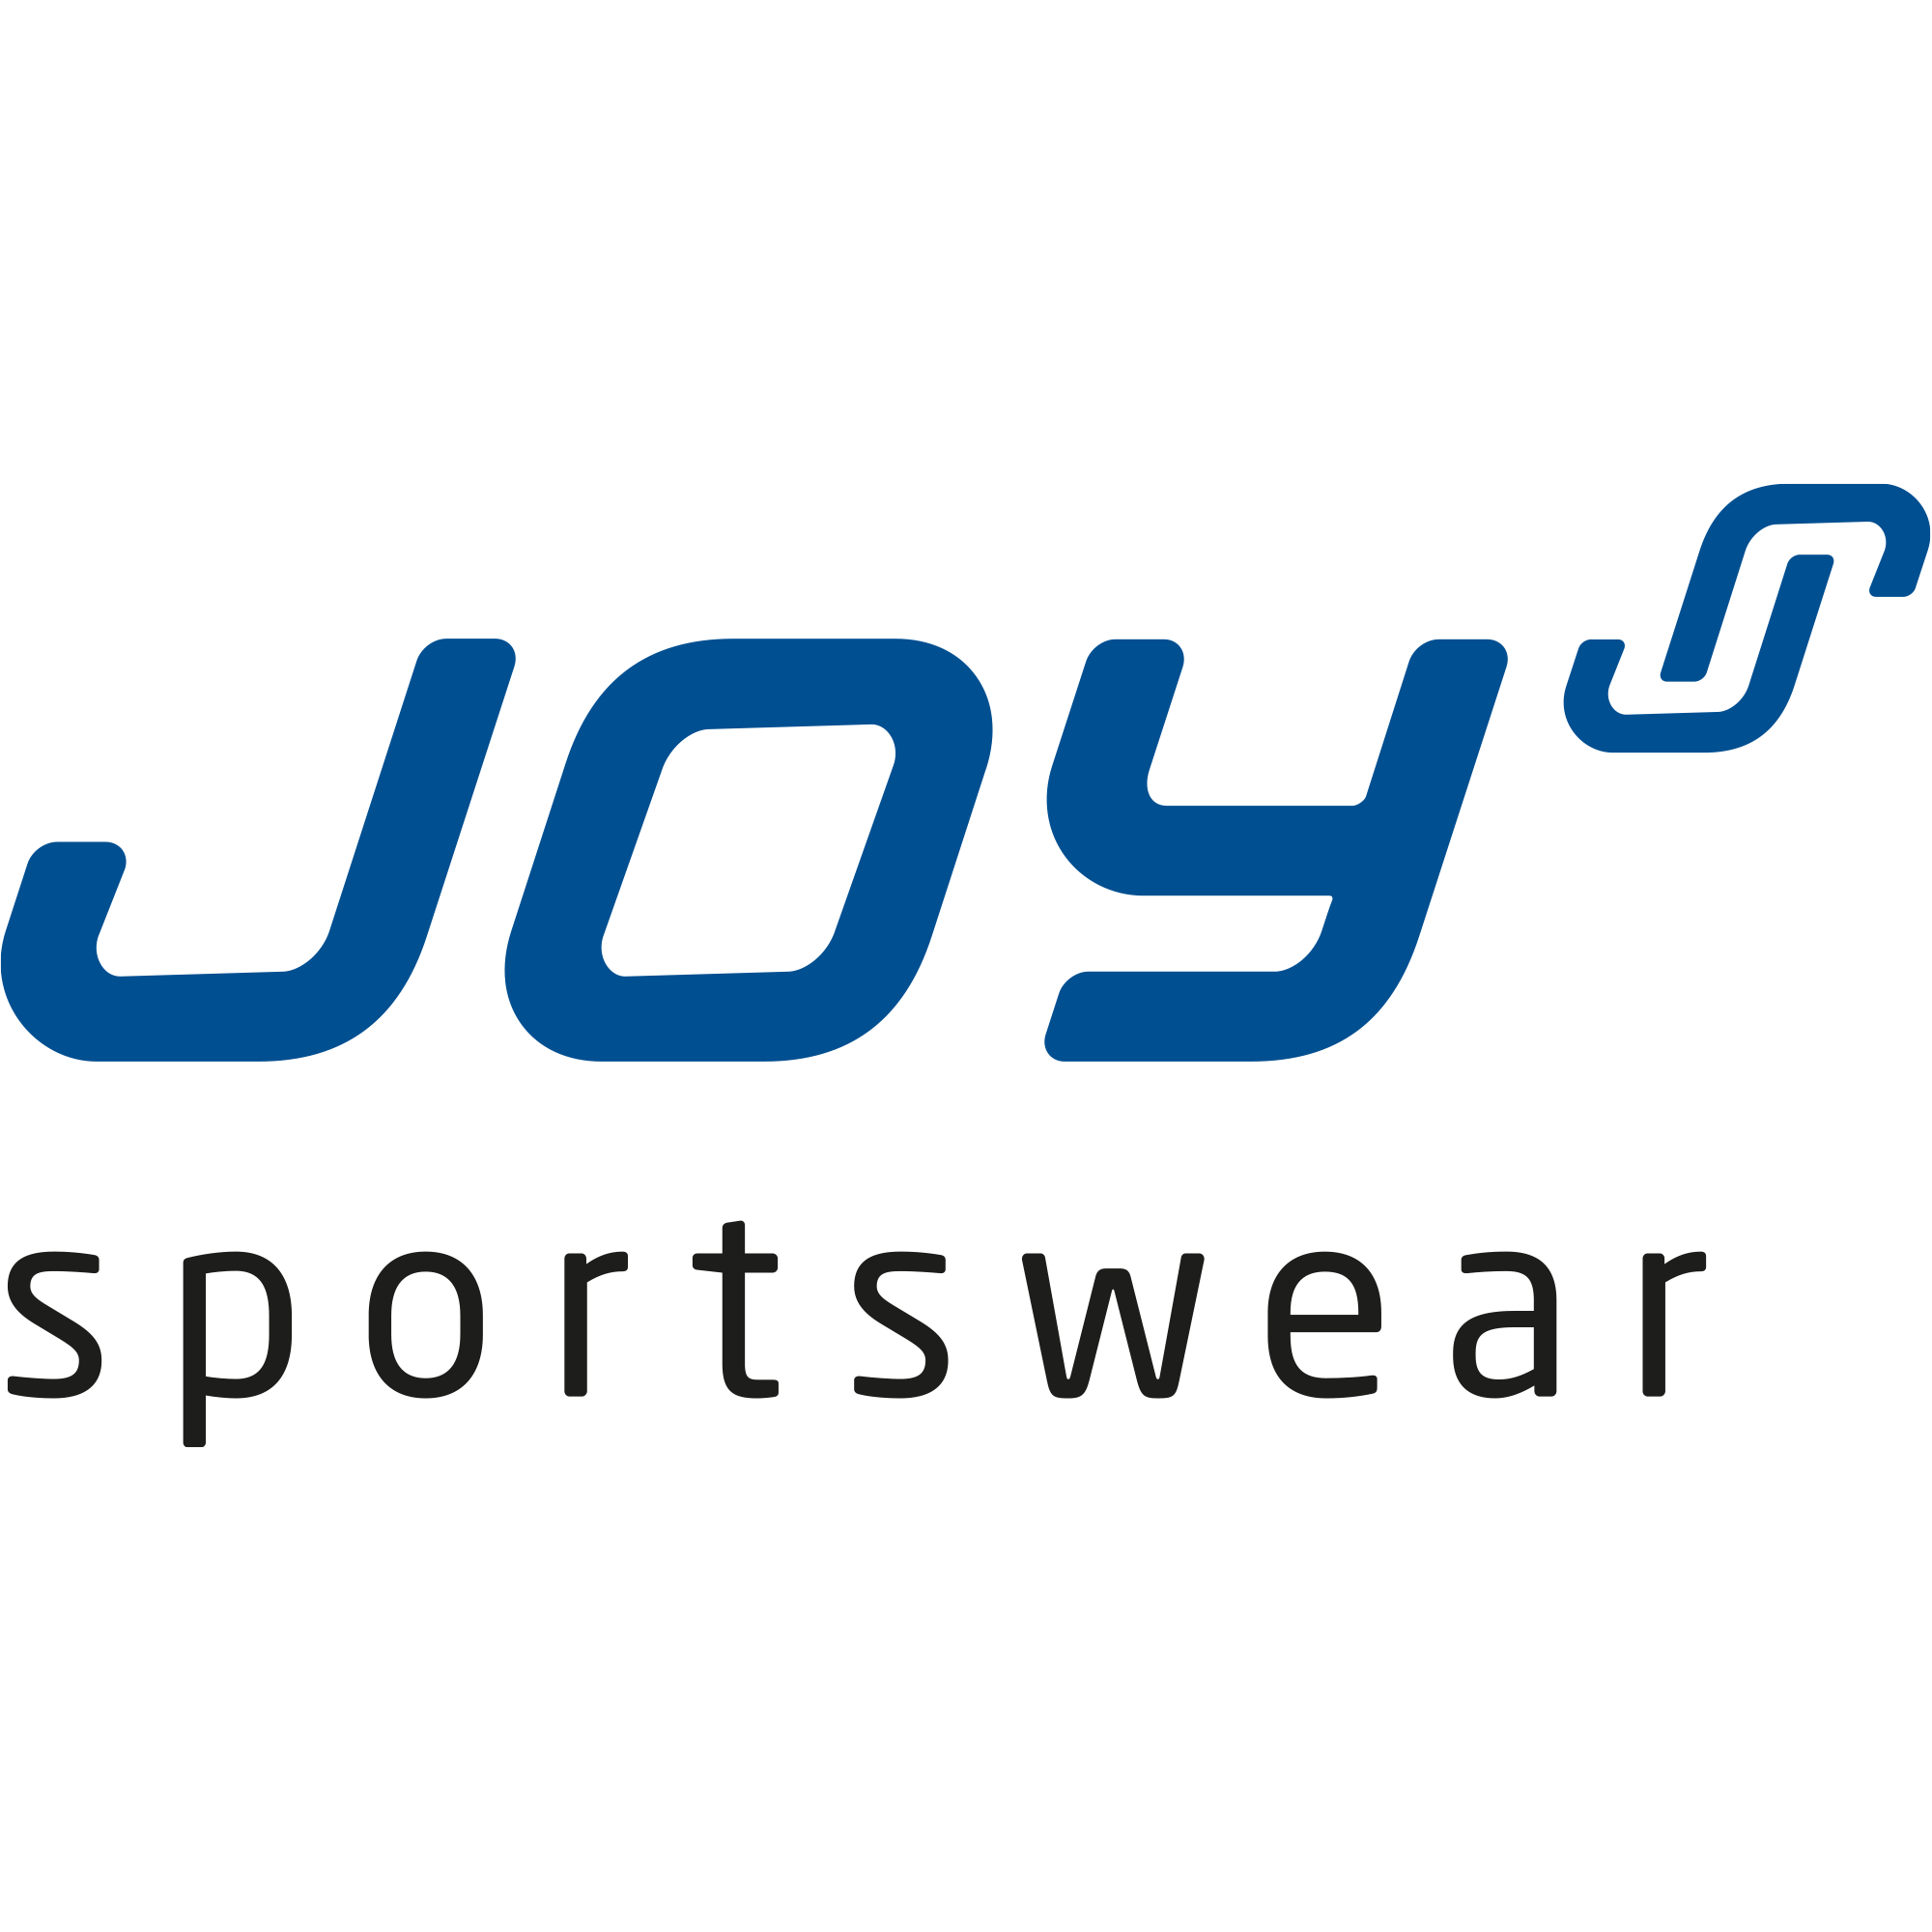 Weitere Artikel von JOY sportswear